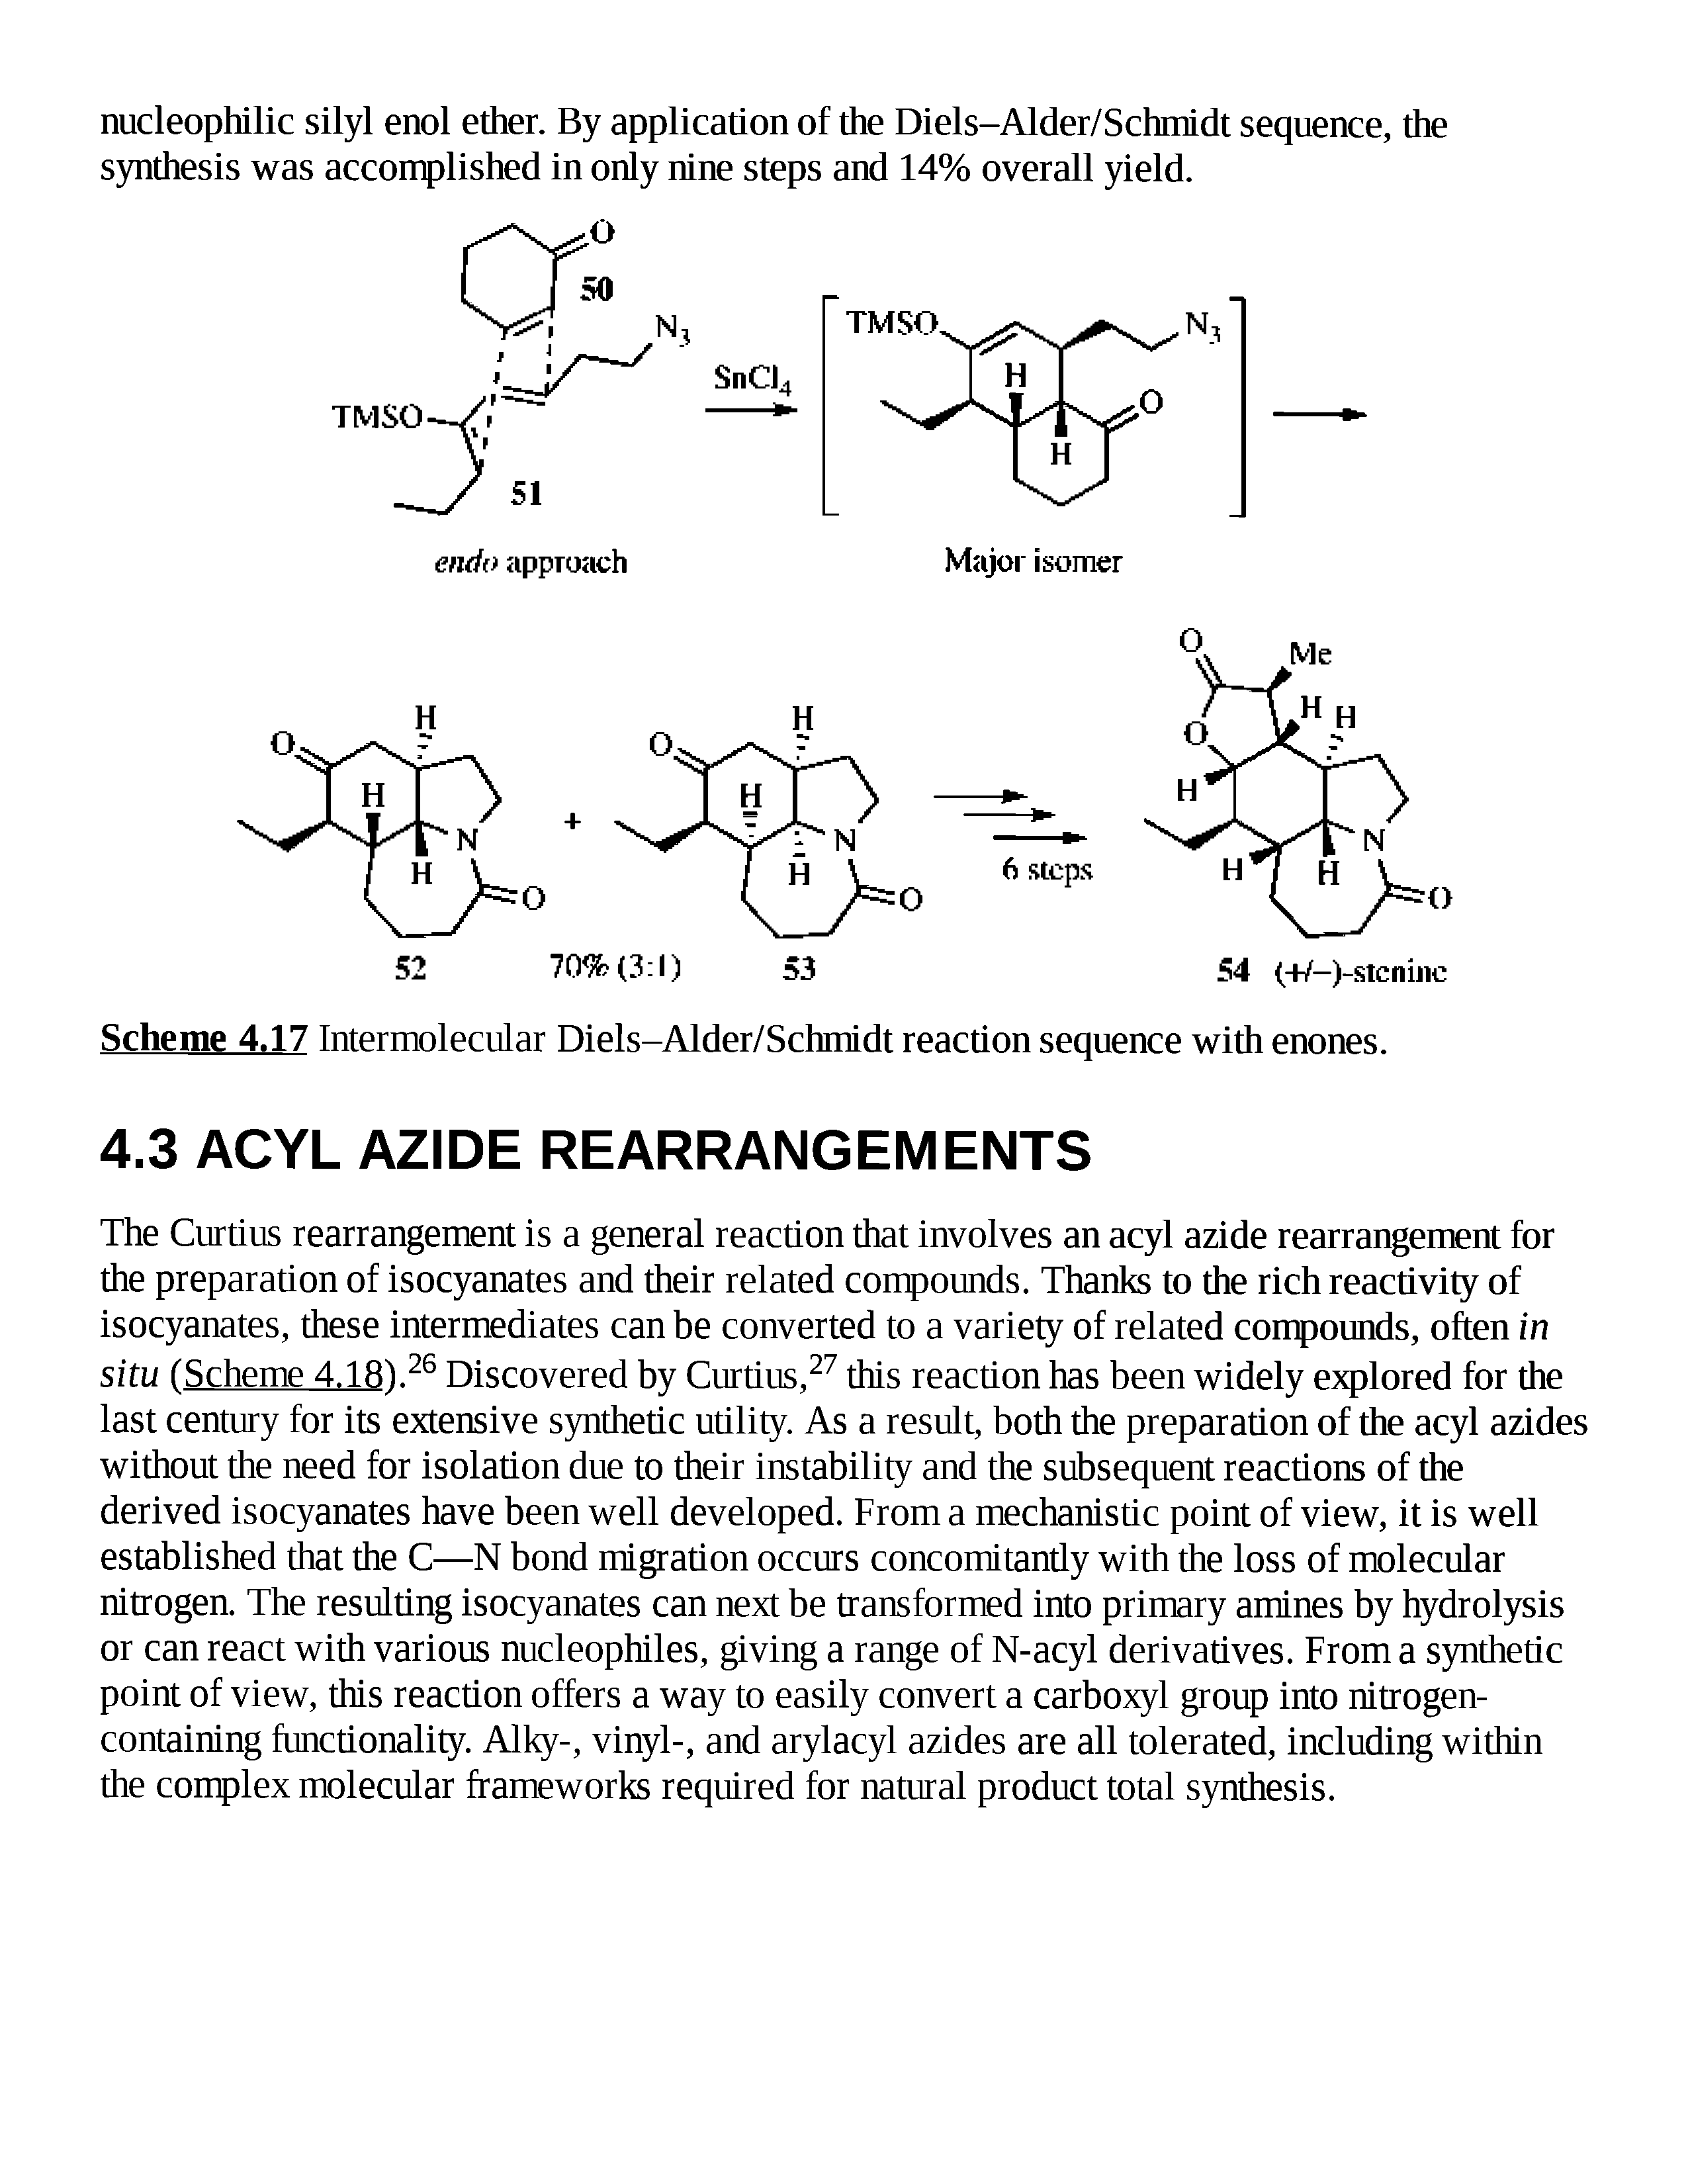 Scheme 4.17 Intermolecular Diels-Alder/Schmidt reaction sequence with enones.